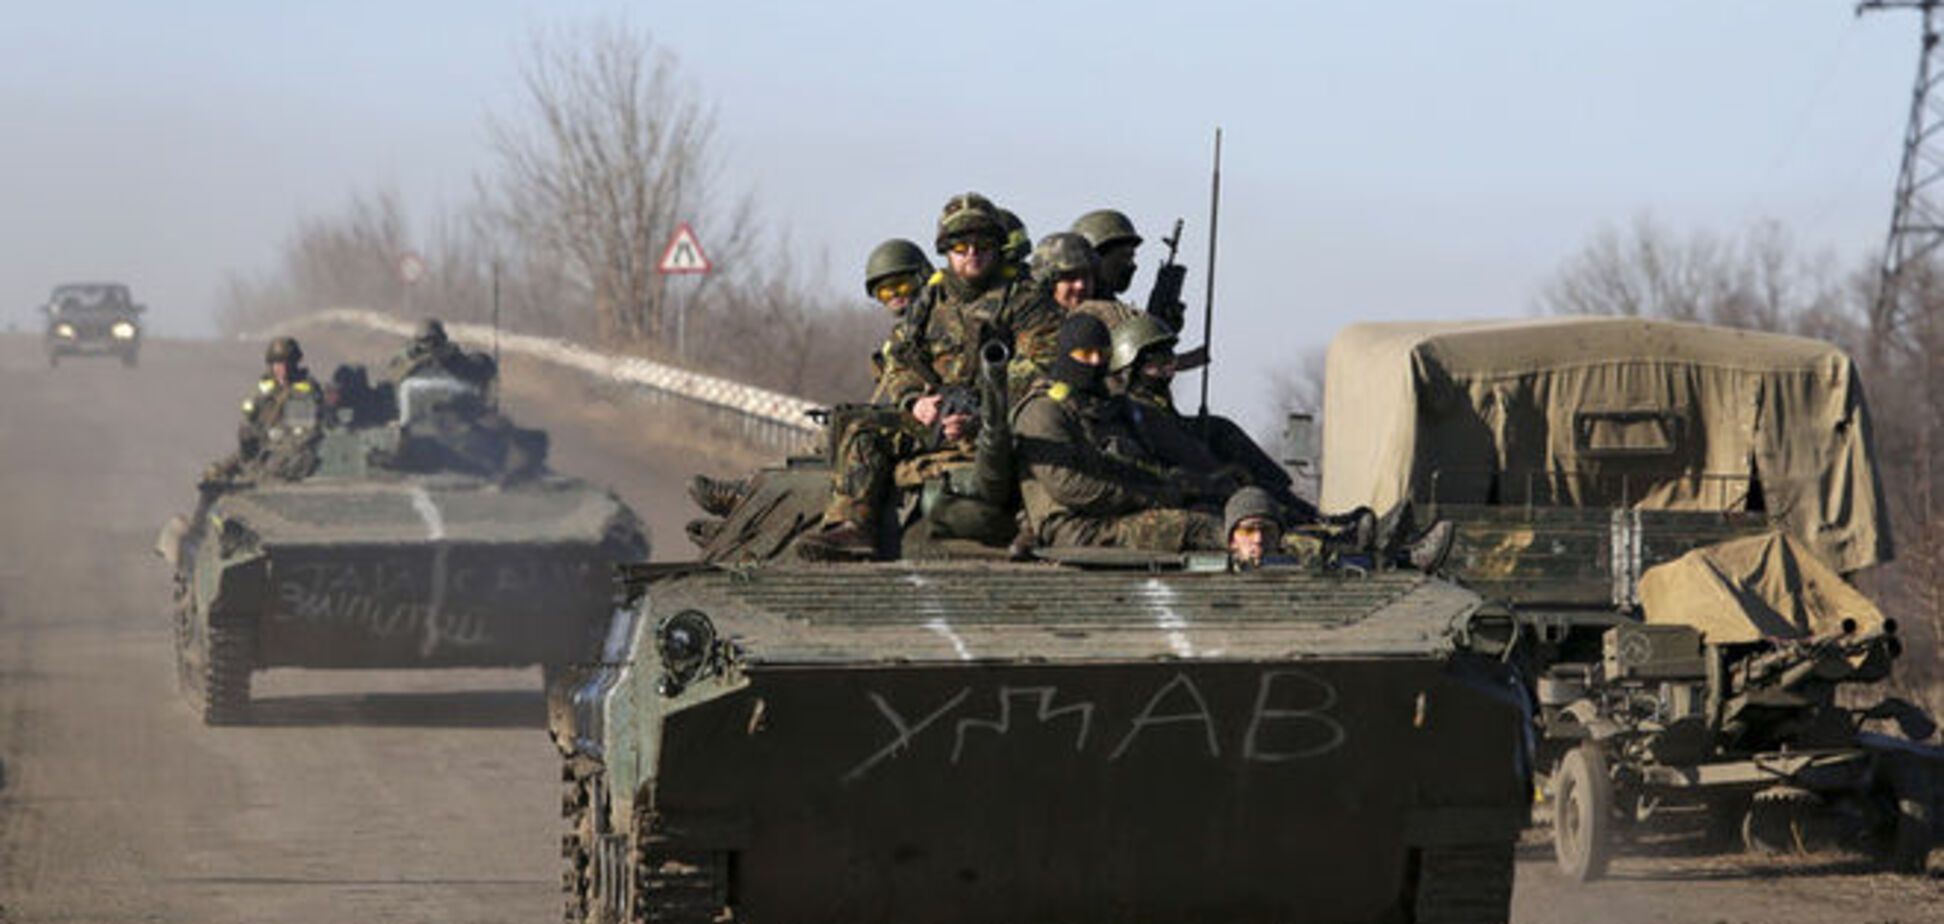 США по примеру России могут открыть 'военторг' для украинской армии - эксперт